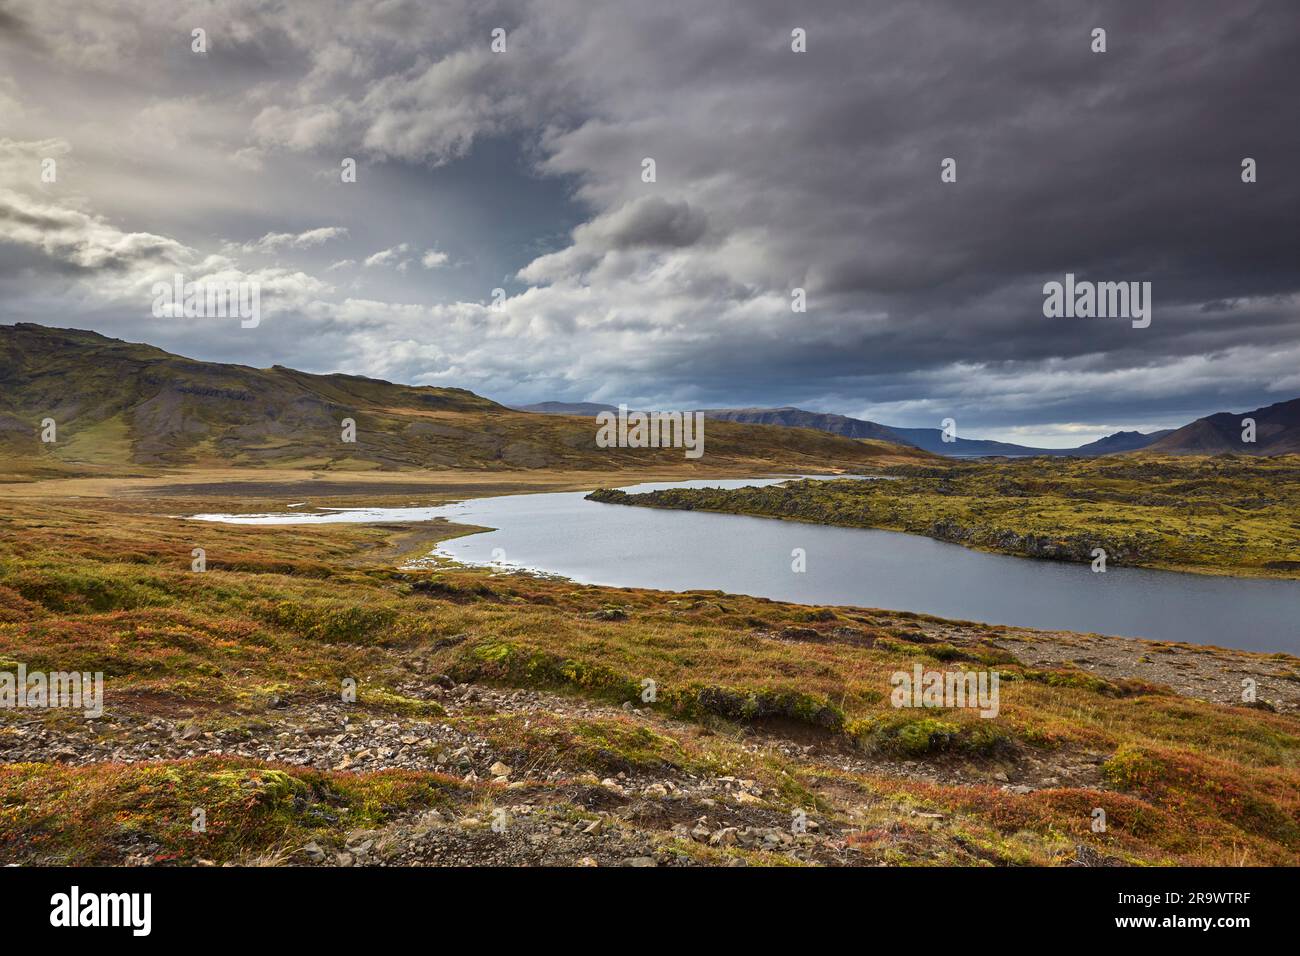 Une vue sur un lac au milieu d'un champ de lave, à Berserkjahraun, près de Stykkisholmur, sur la péninsule de Snaefellsnes, à l'ouest de l'Islande. Banque D'Images